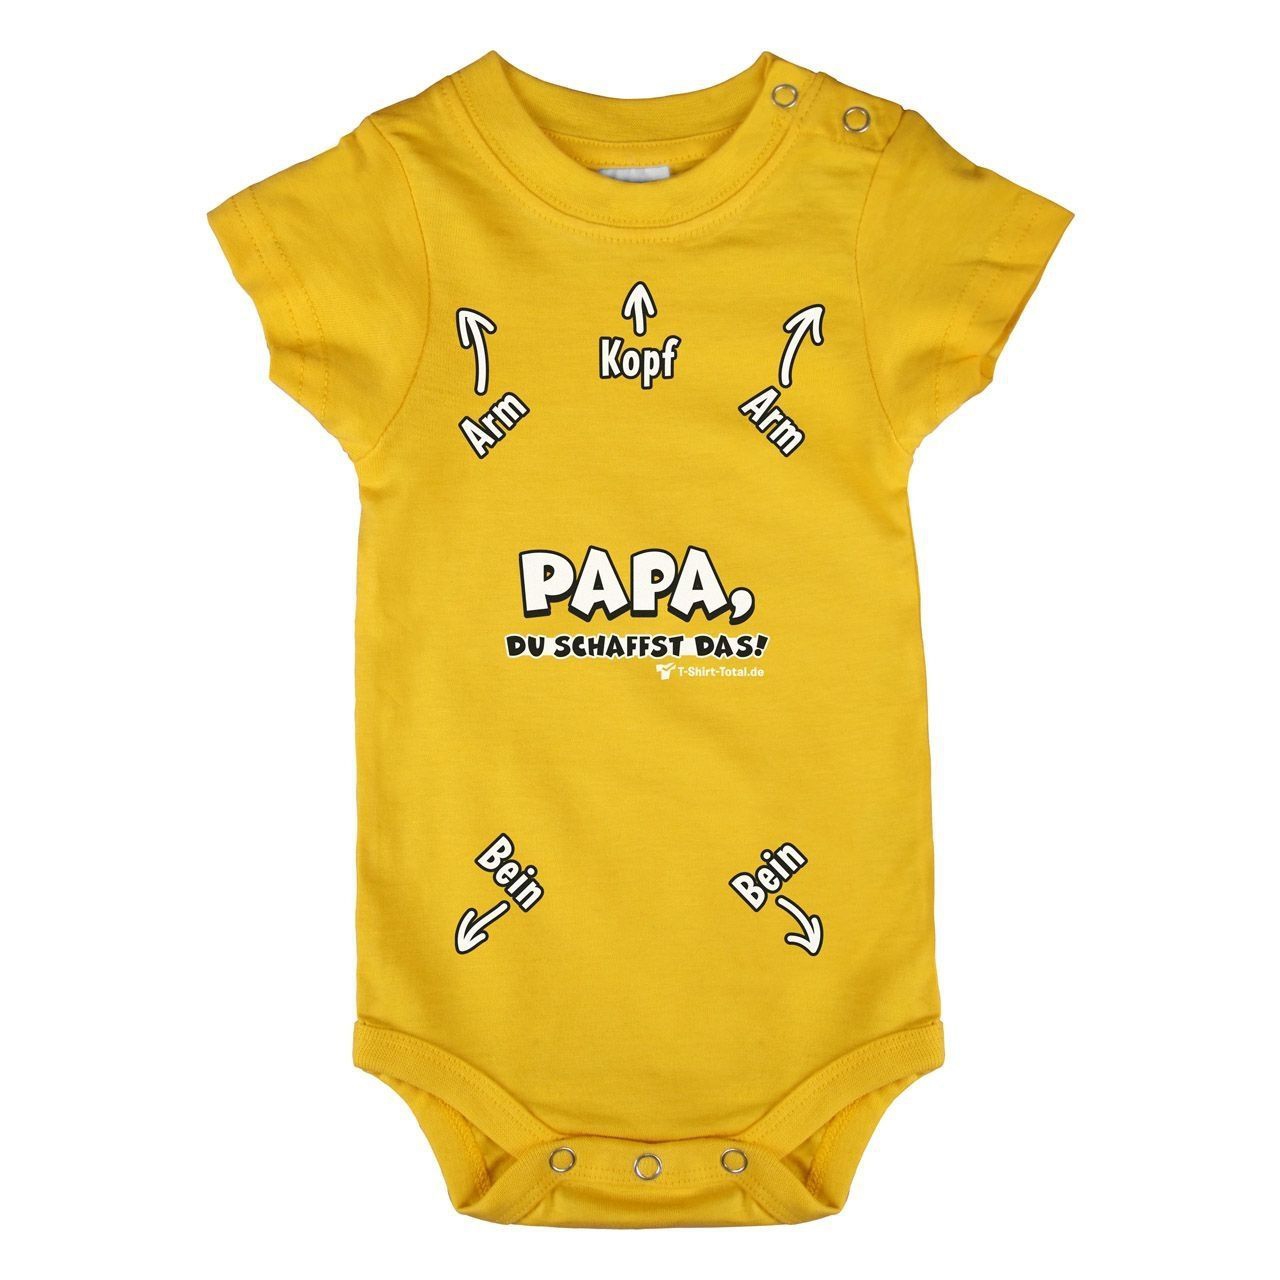 Papa du schaffst das Baby Body Kurzarm gelb 56 / 62